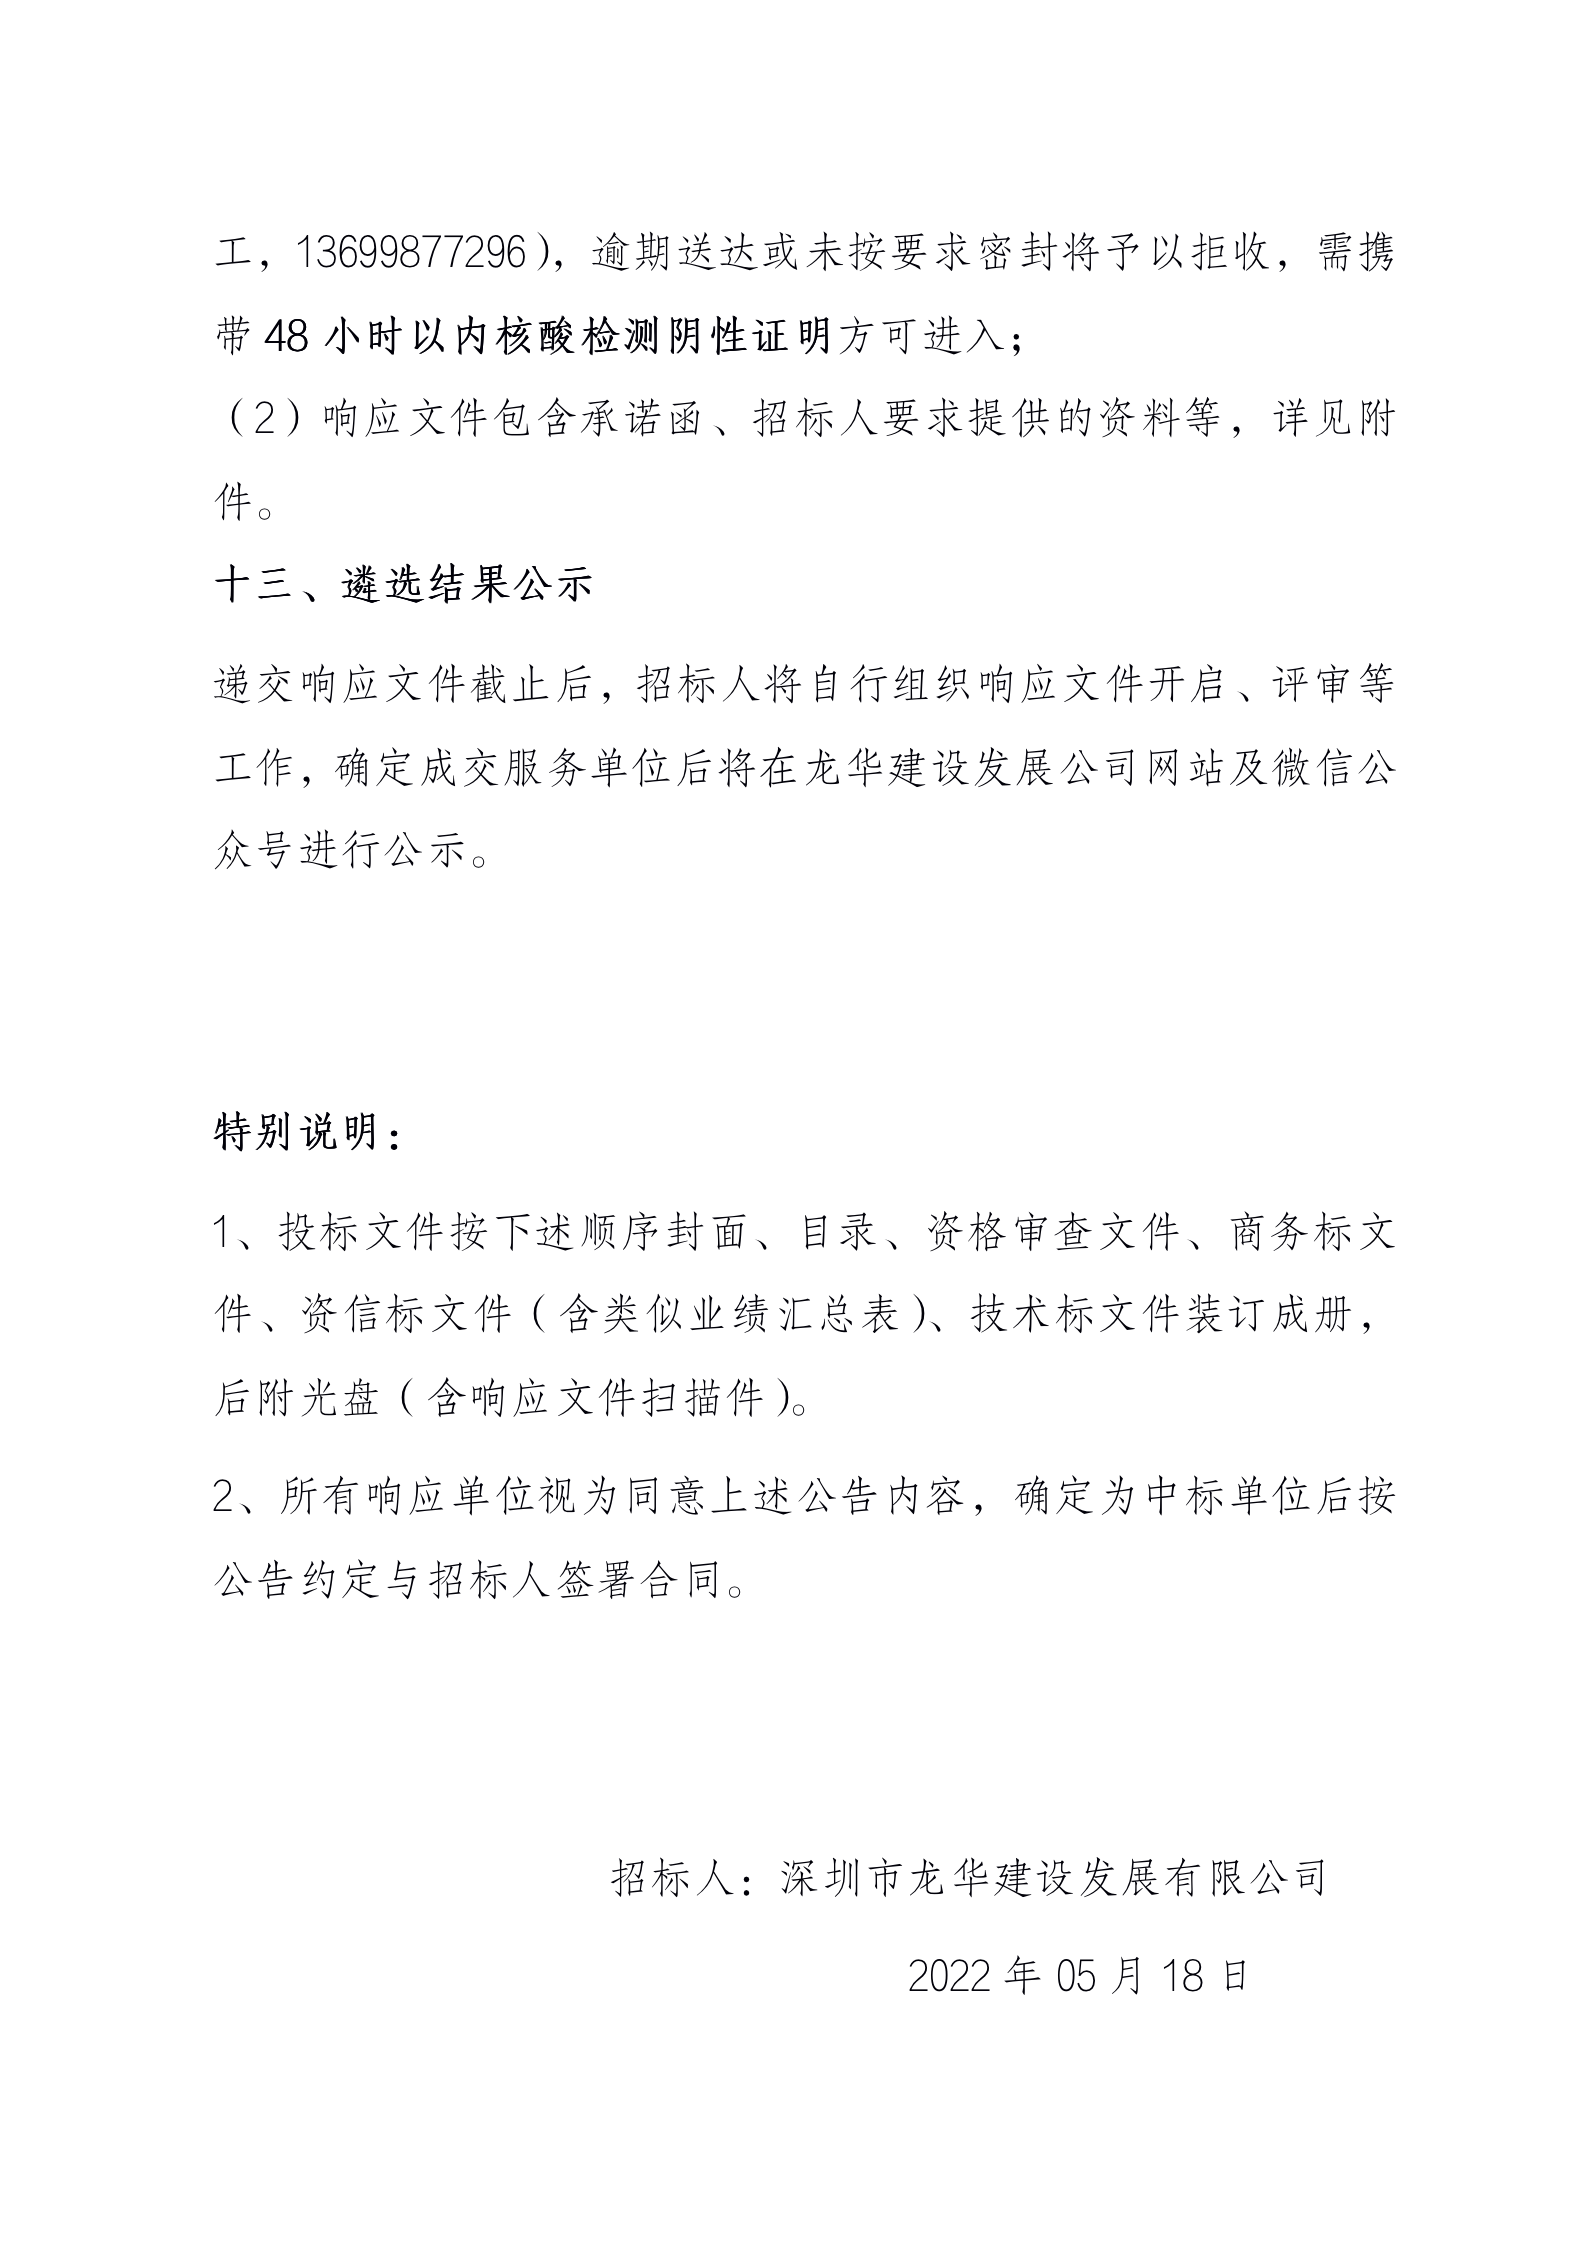 中国电信龙华通信机楼第十层装修项目（施工)公开遴选公告